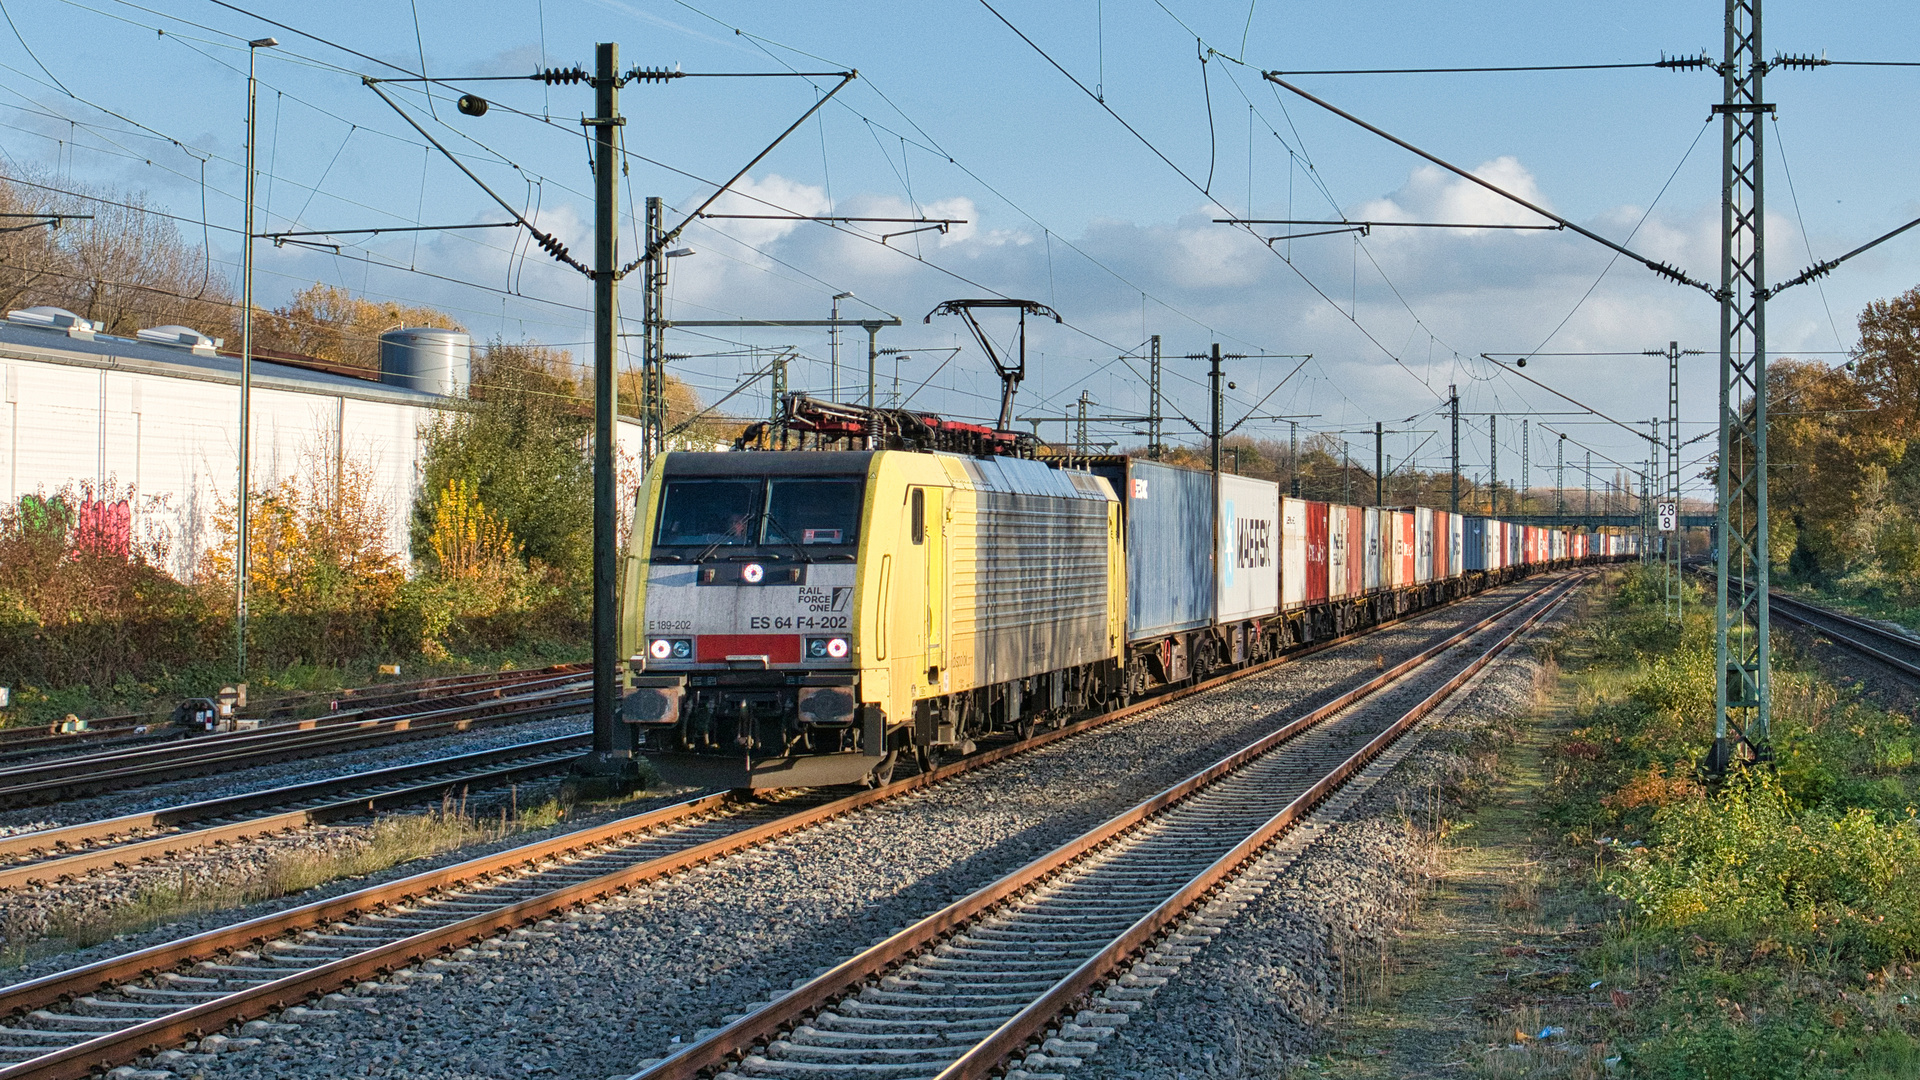 Rail Force One in Eller - Warteposition